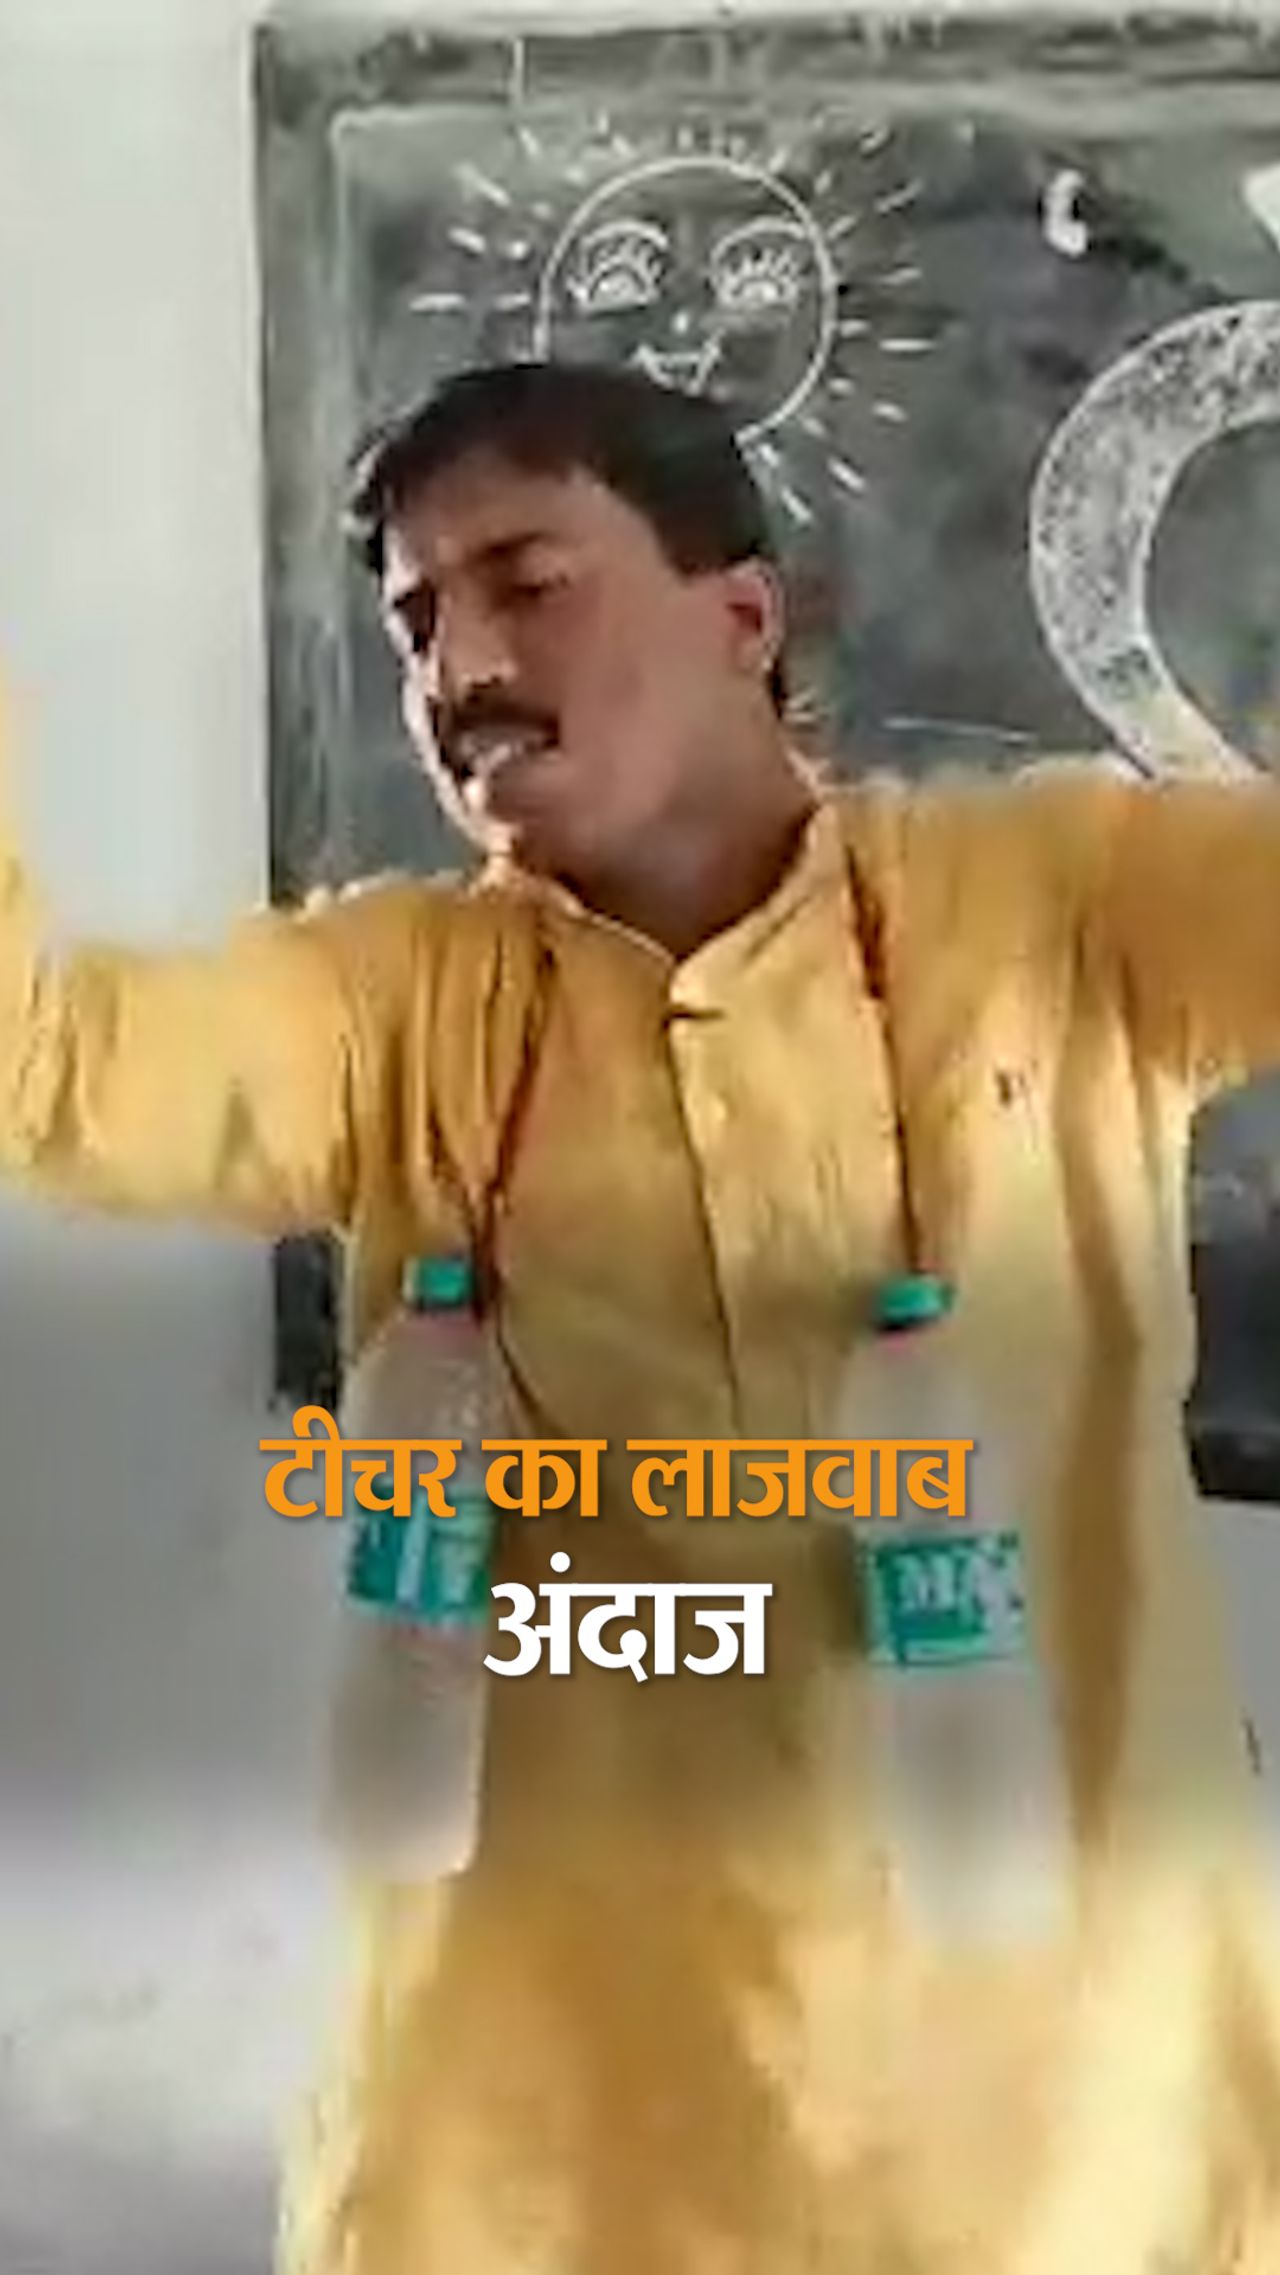 Heart touching video of a teacher from Bihar surfaced